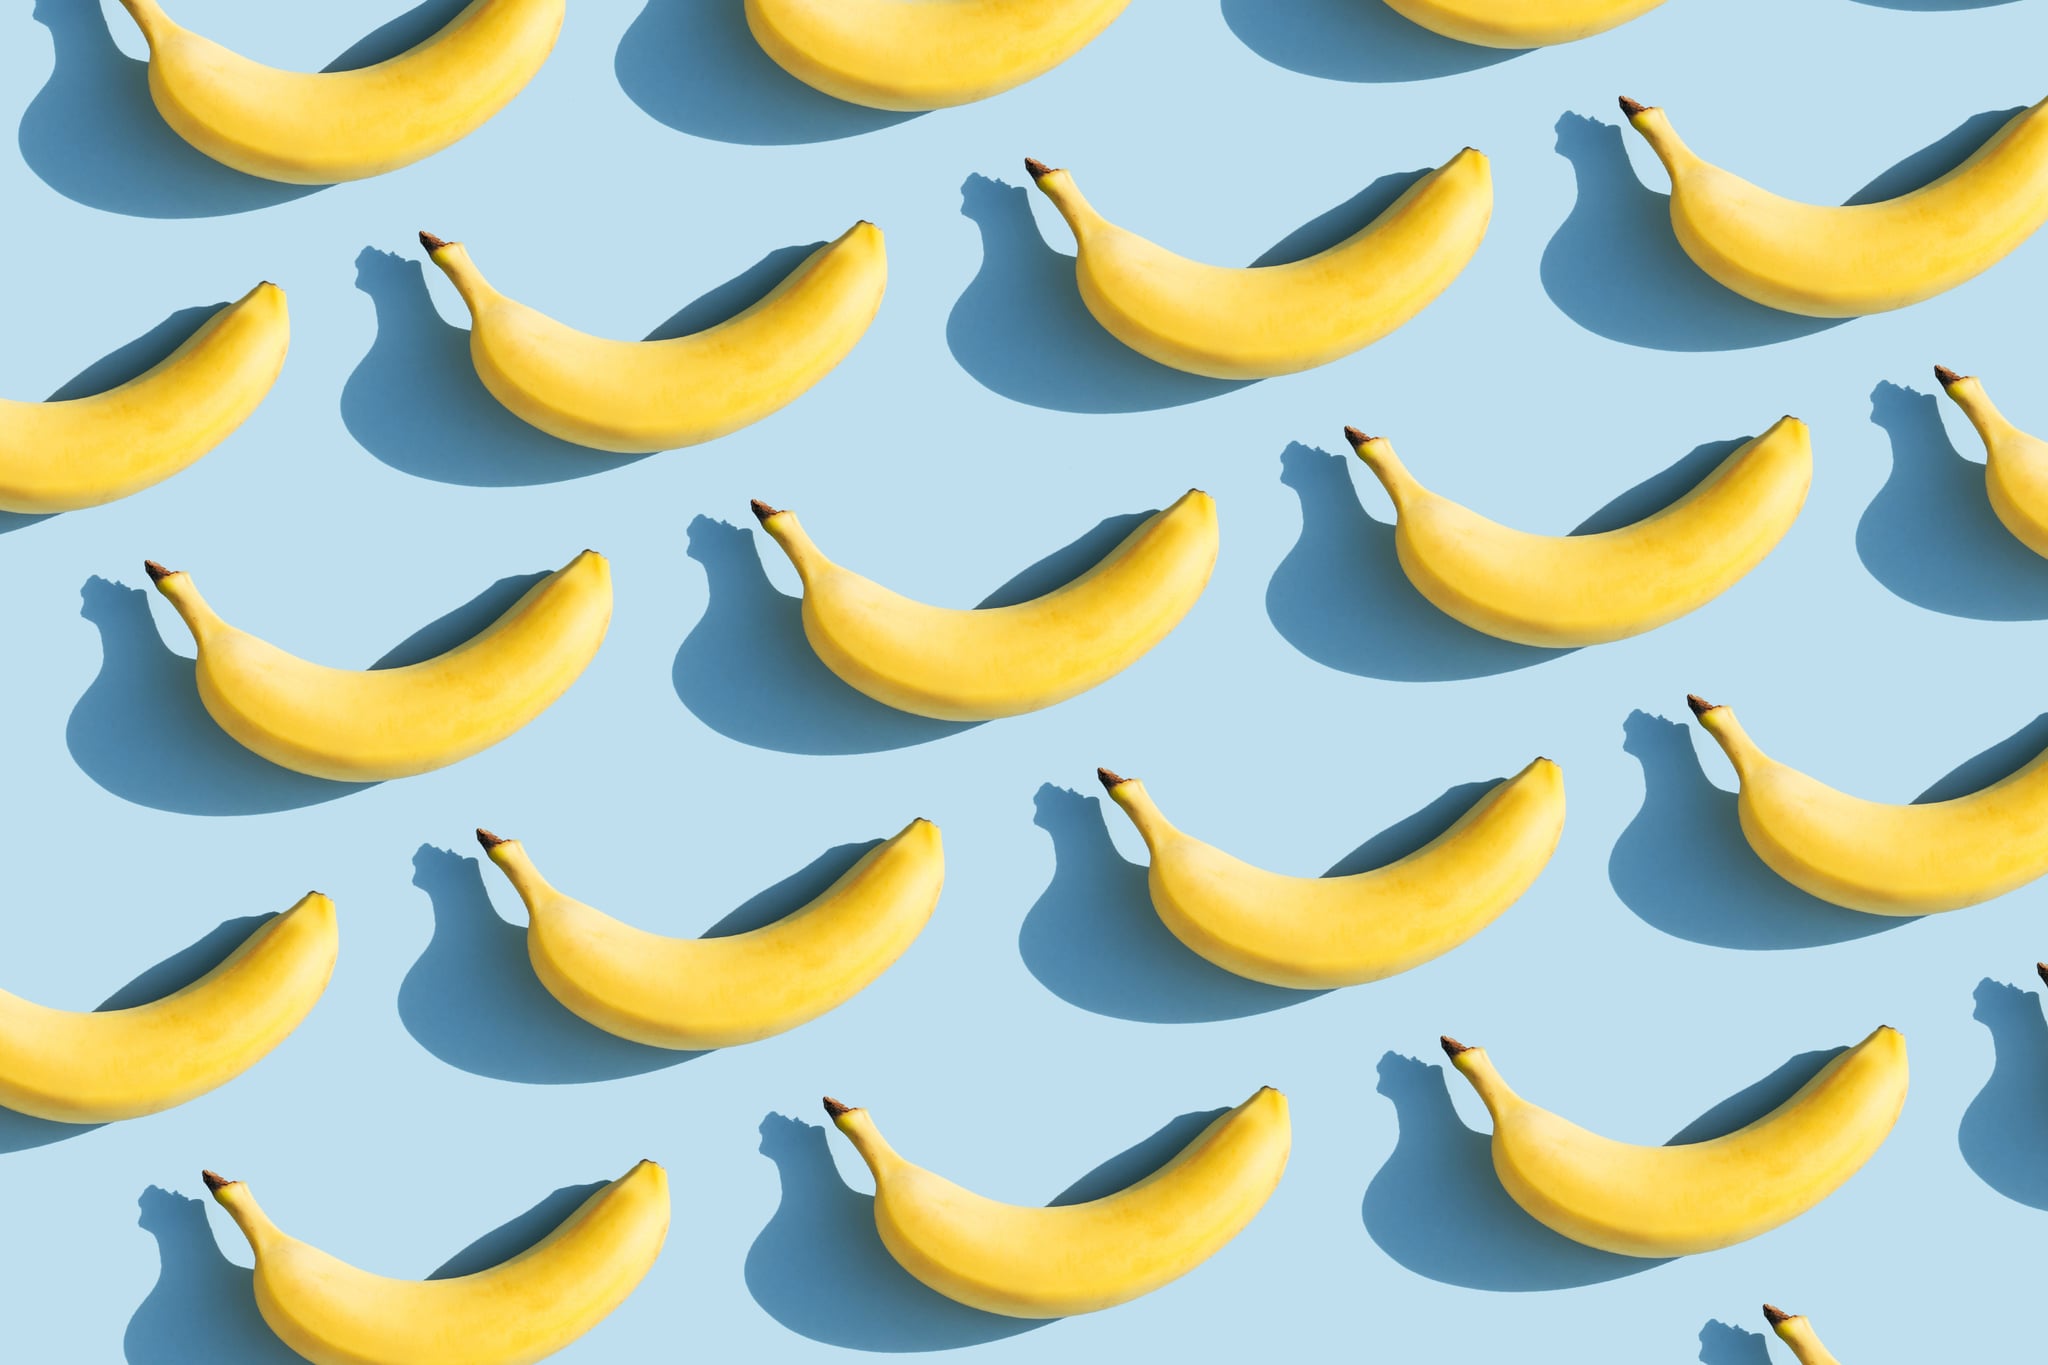 Красочный фруктовый узор из свежих желтых бананов на синем фоне с тенями.  Концепция фруктов.  Плоская планировка, вид сверху.